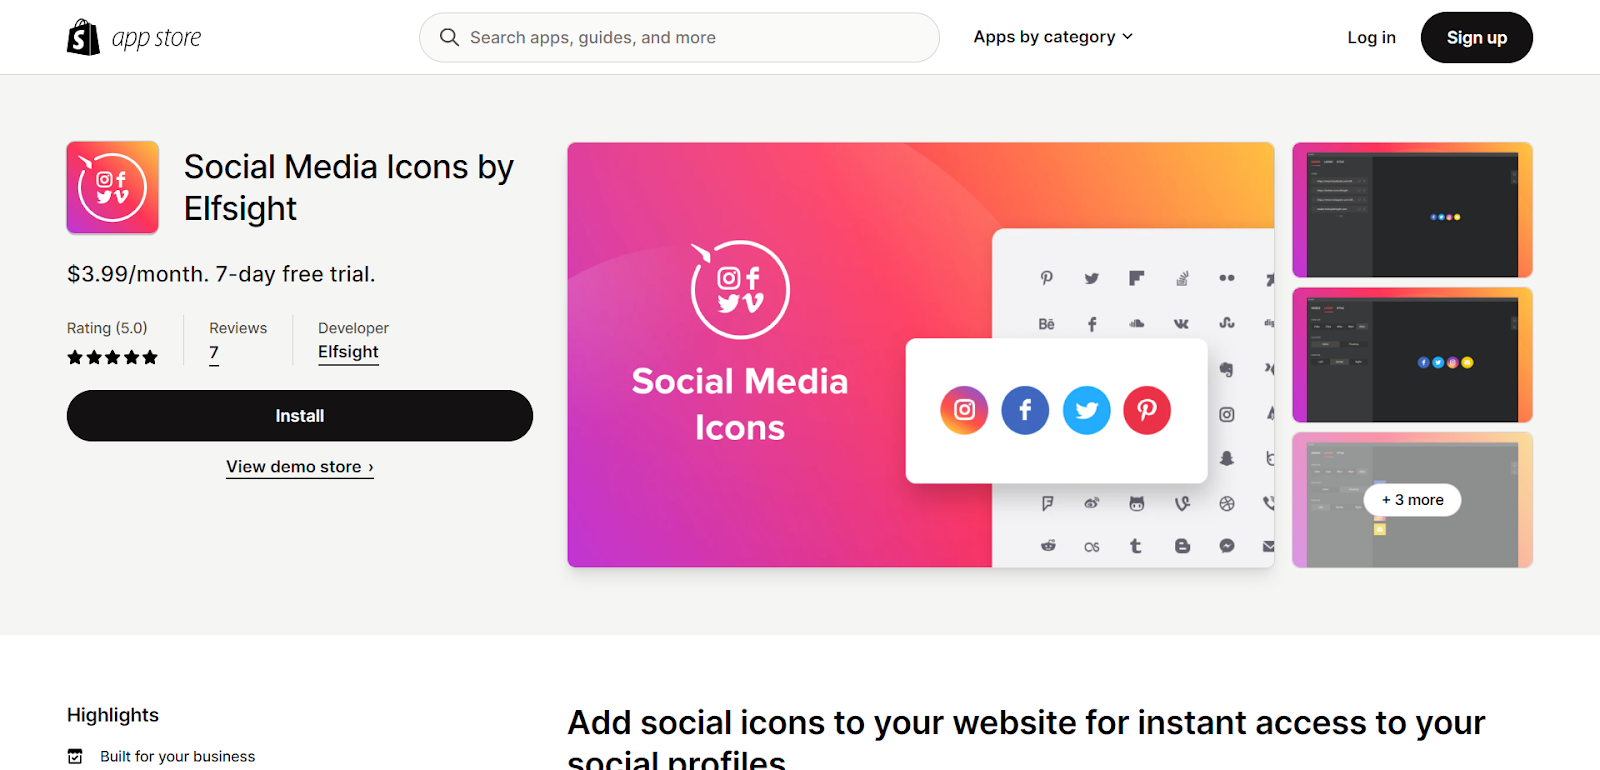 Social Media Icons plugin by Elfsight